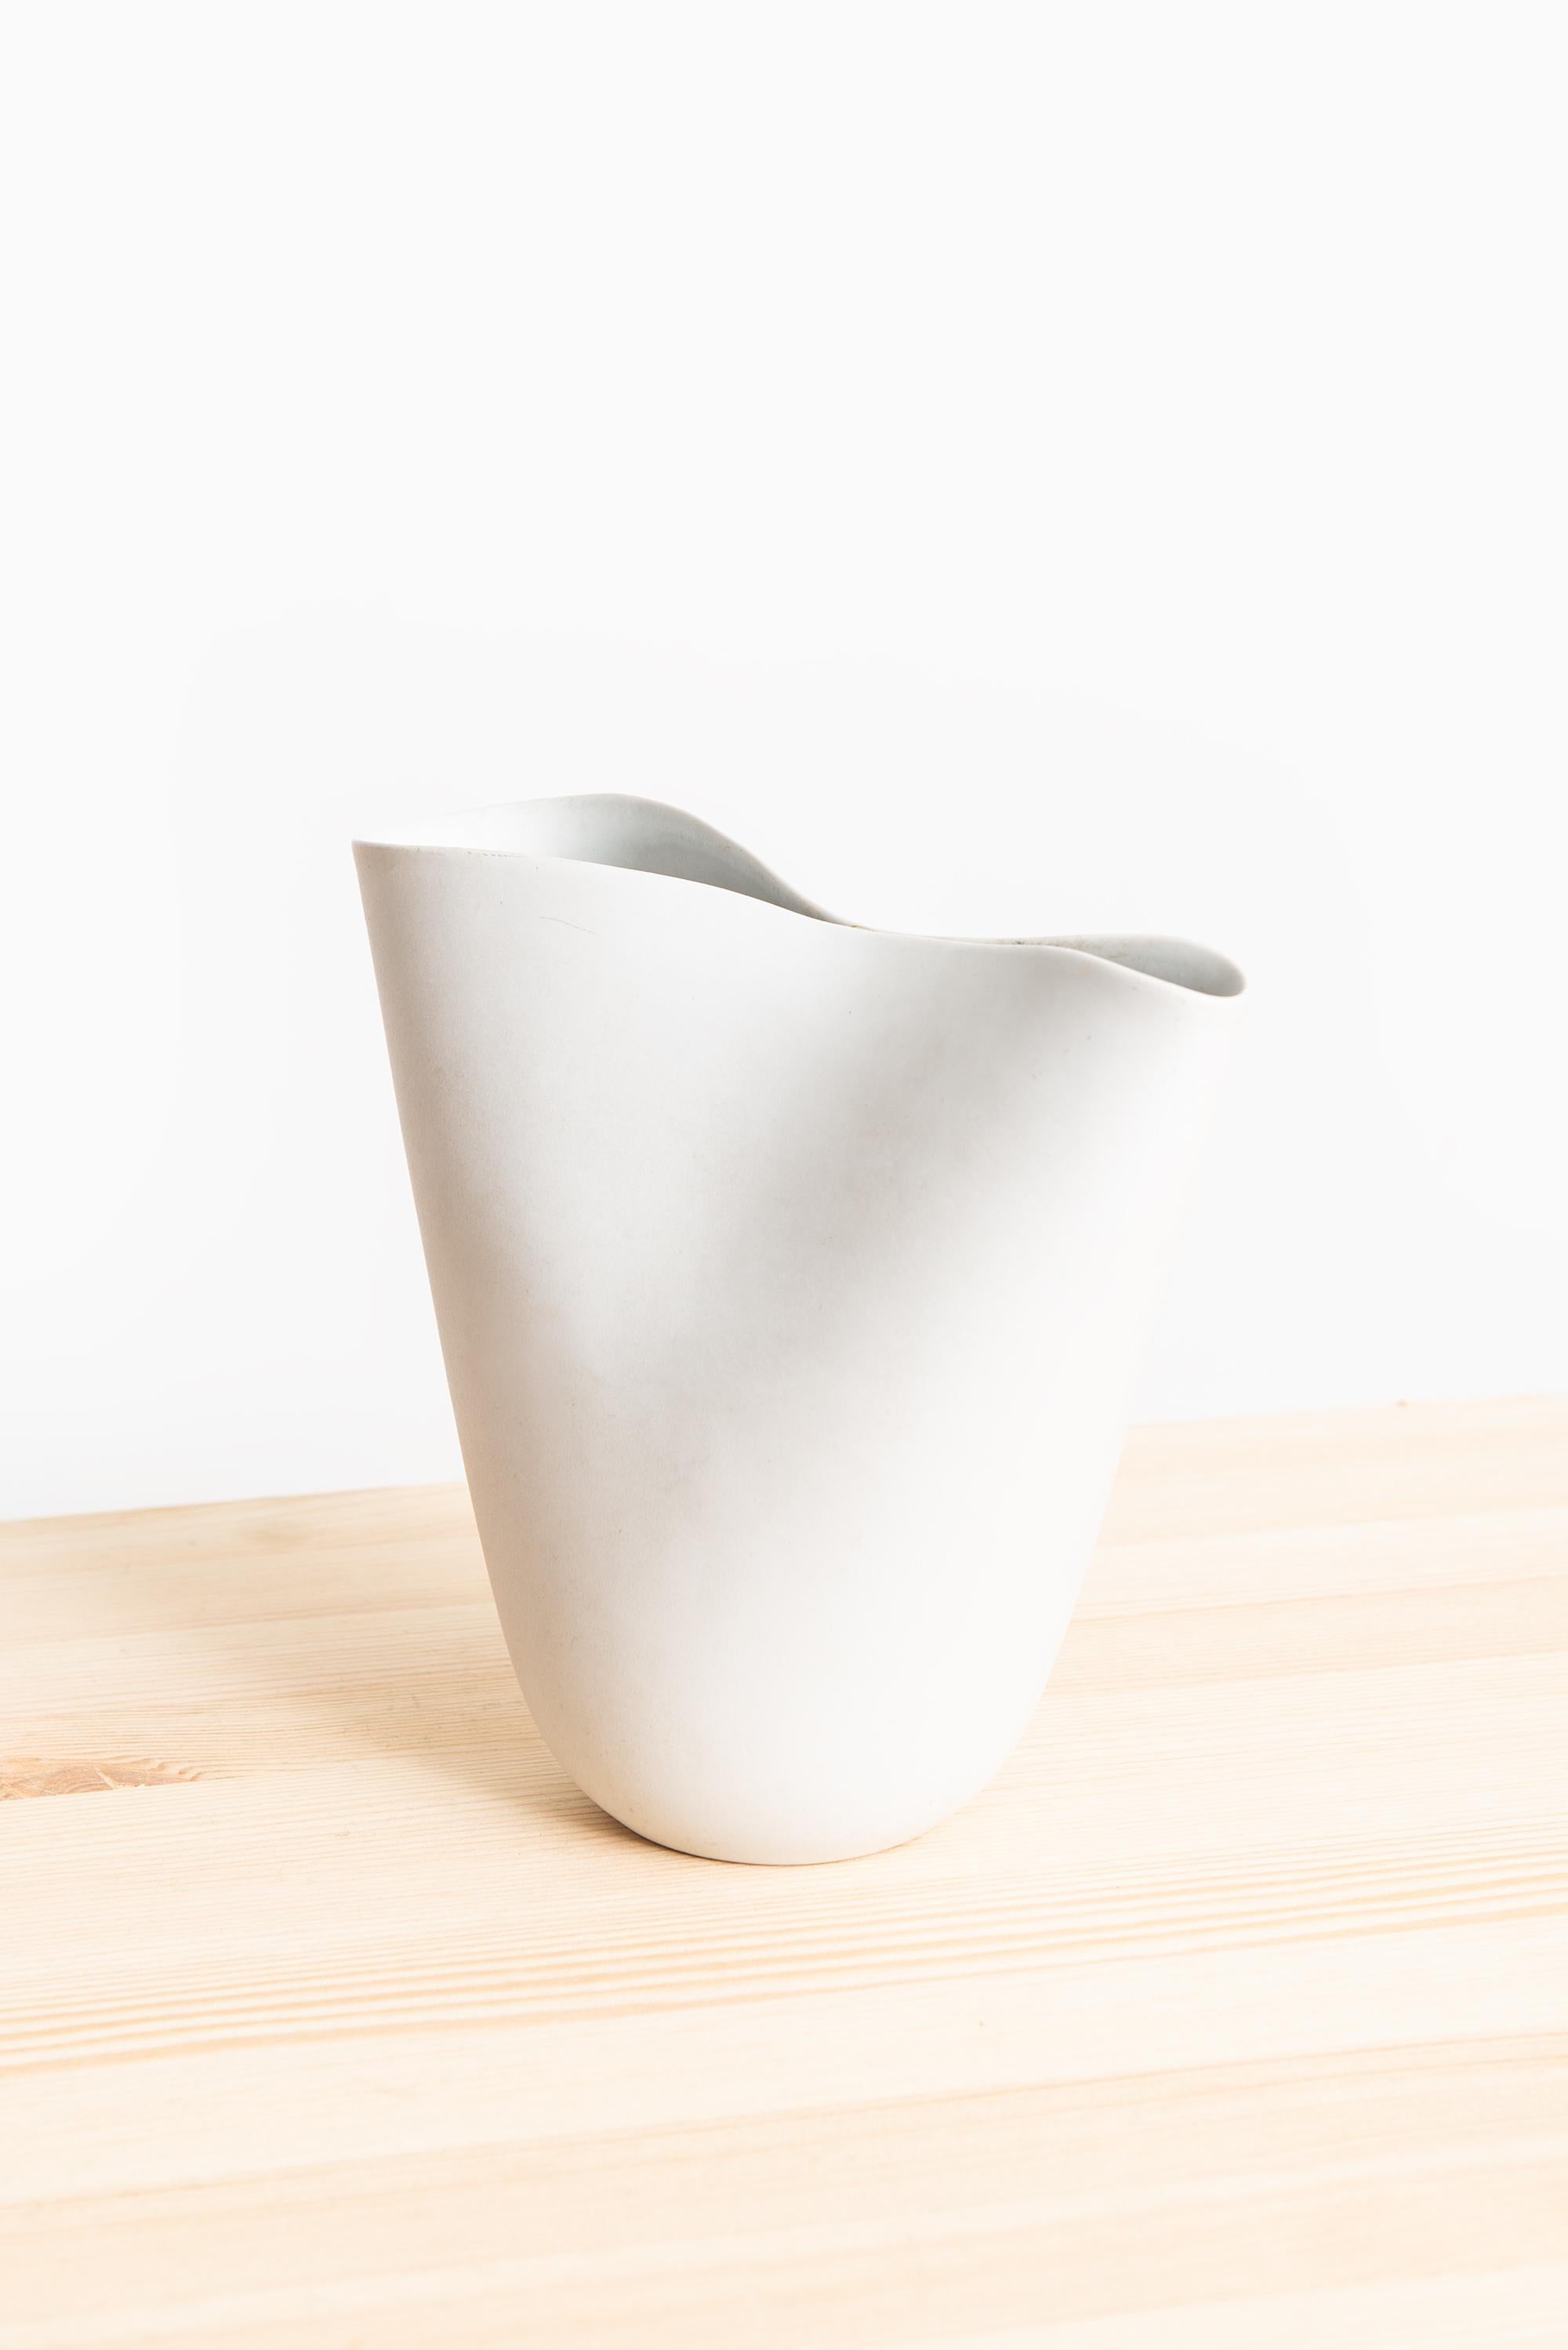 Big ceramic vase model Veckla designed by Stig Lindberg. Produced by Gustavsberg in Sweden.